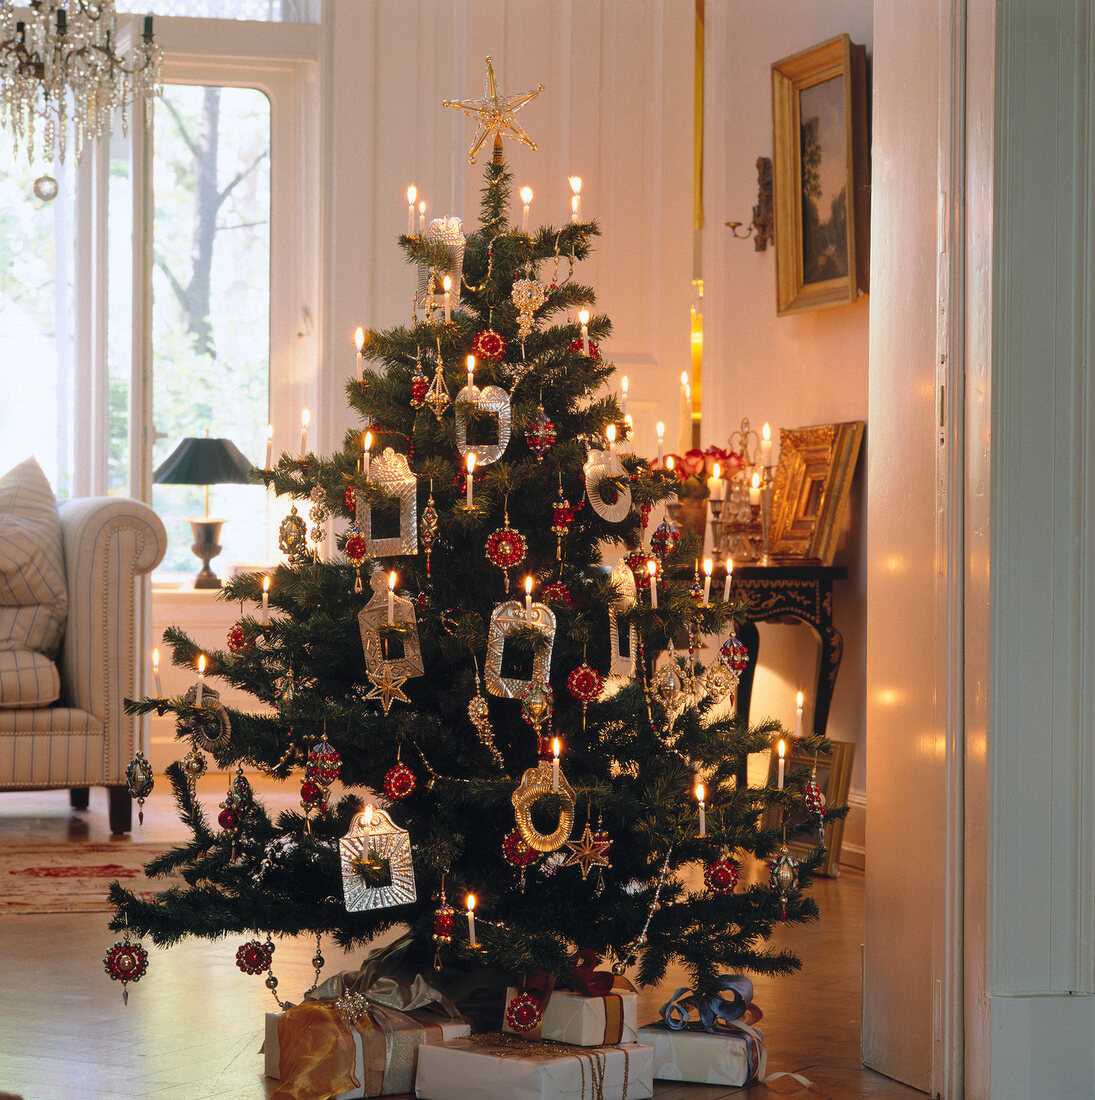 Weihnachtsbaum mit Bilderrahmen gesc hmückt